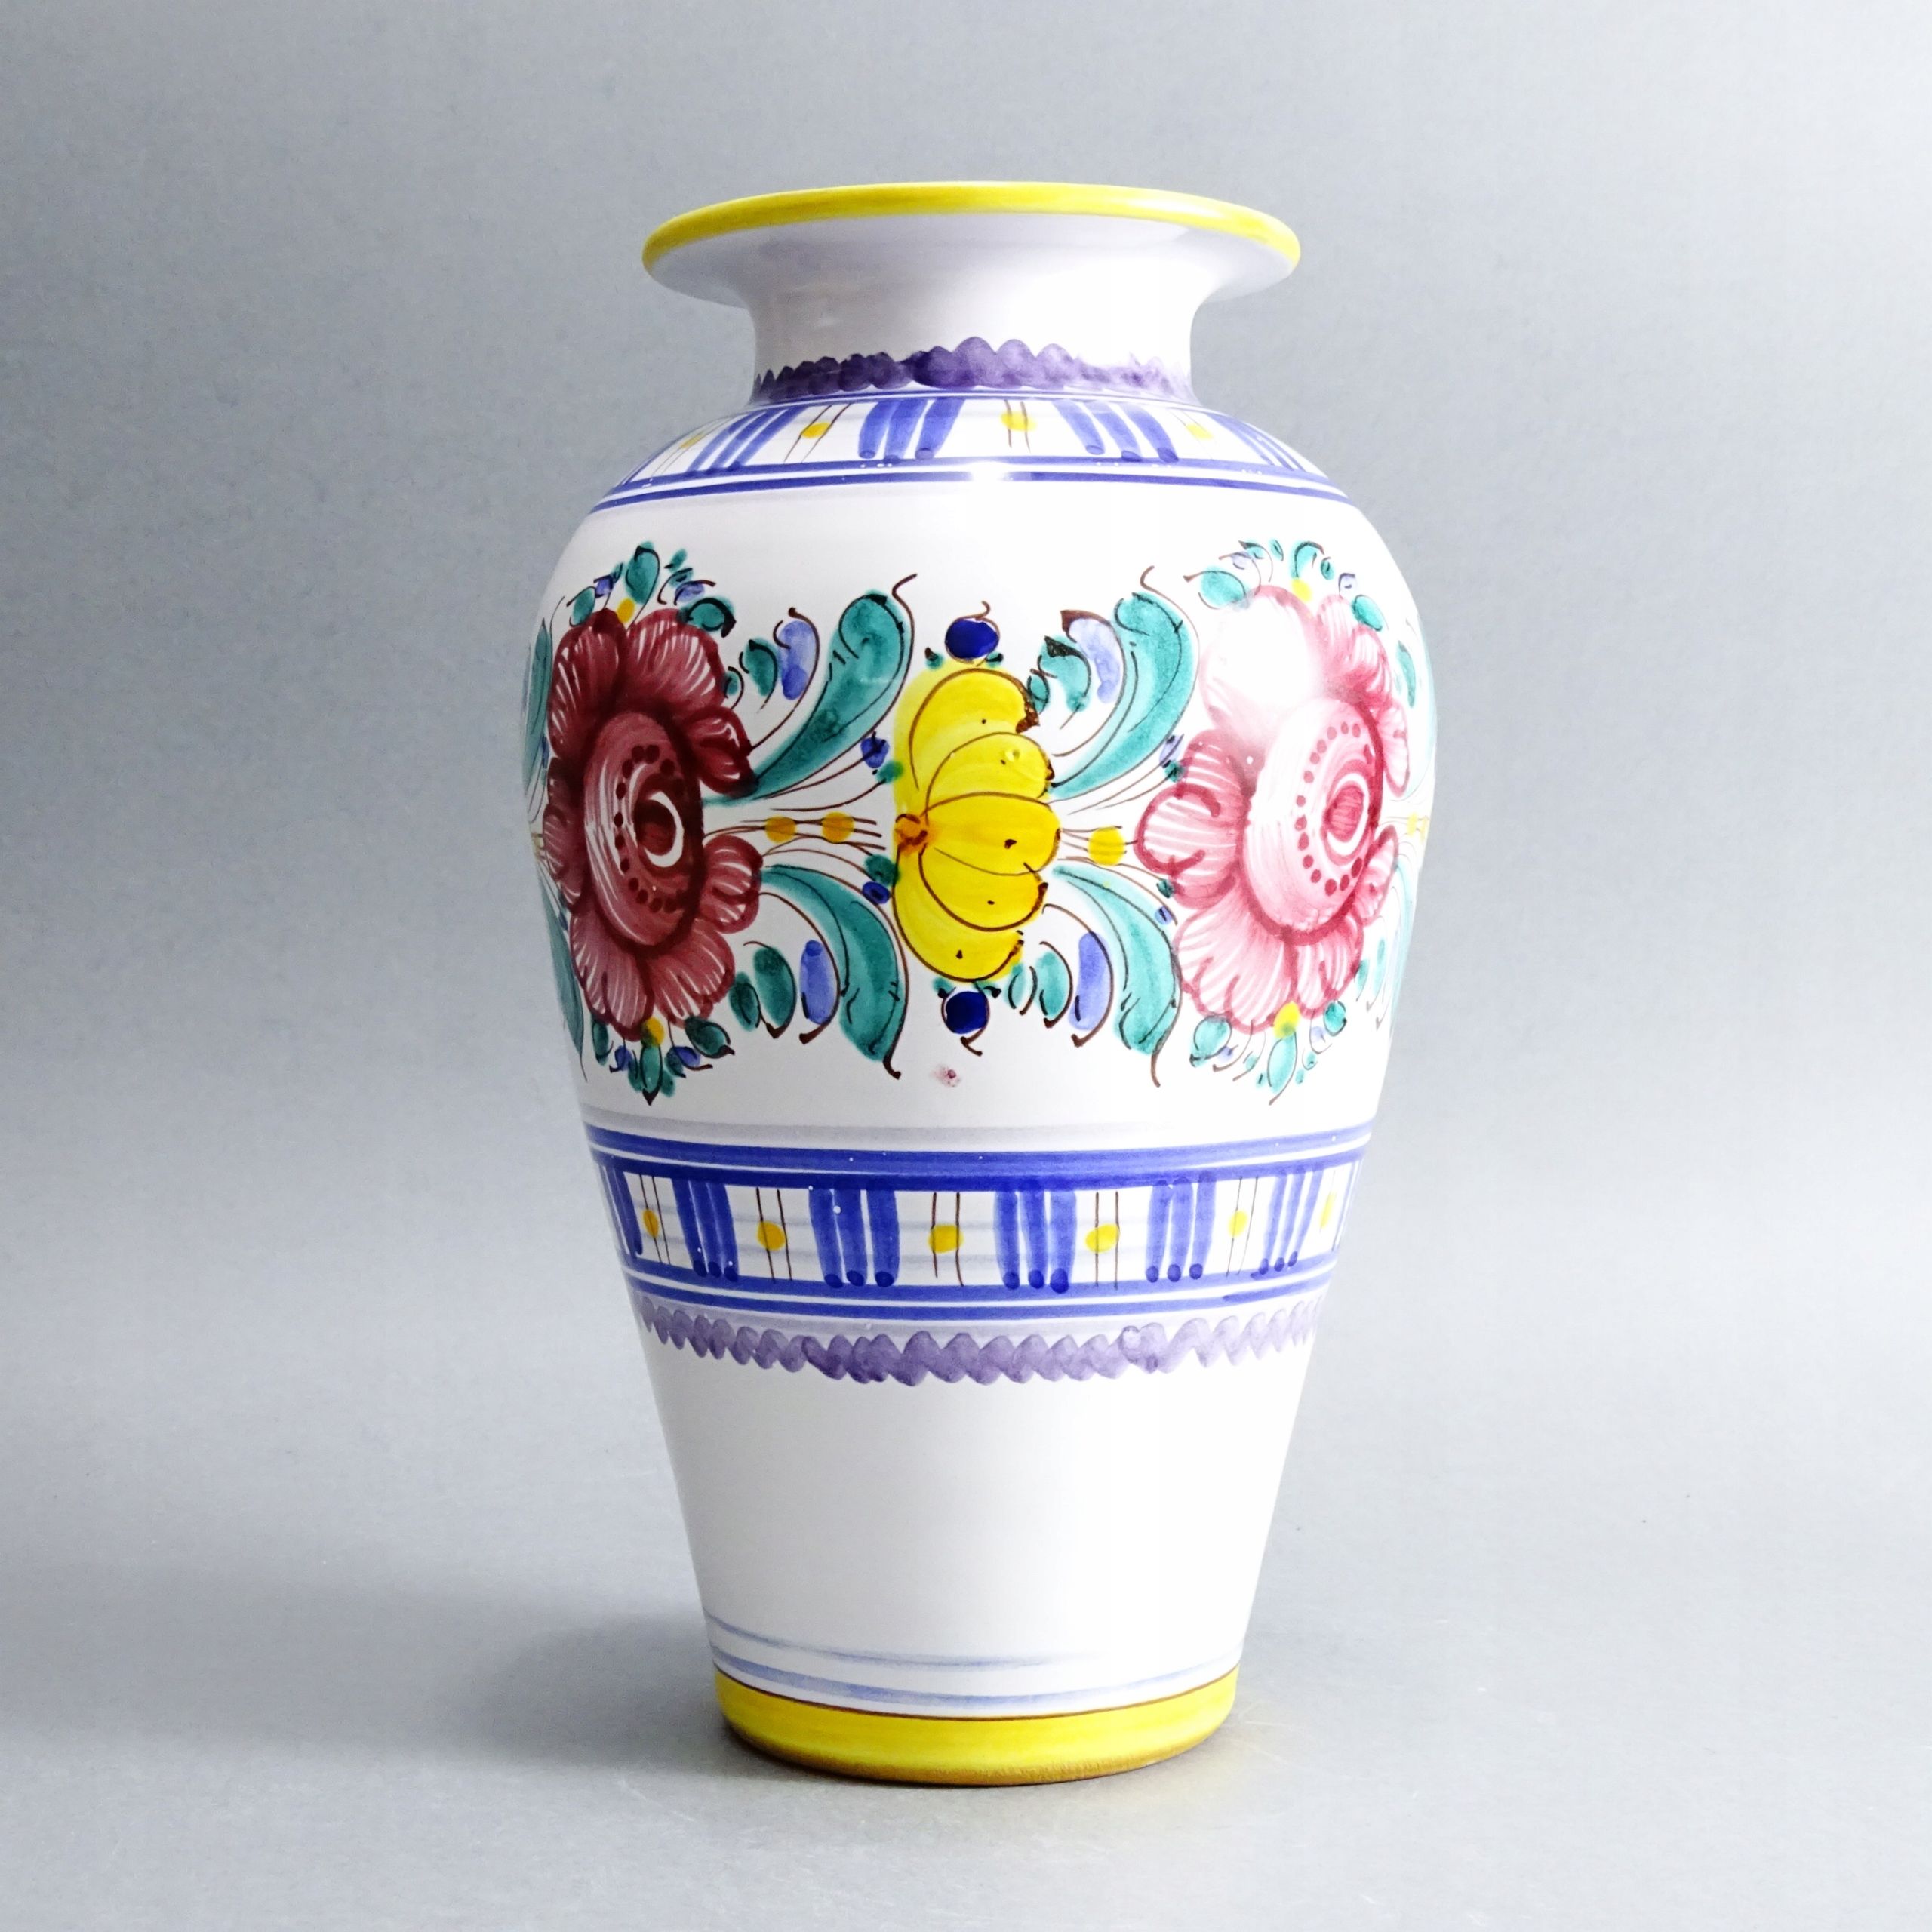 ceramika słowacka piękny duży malowany wazon w stylu ludowym